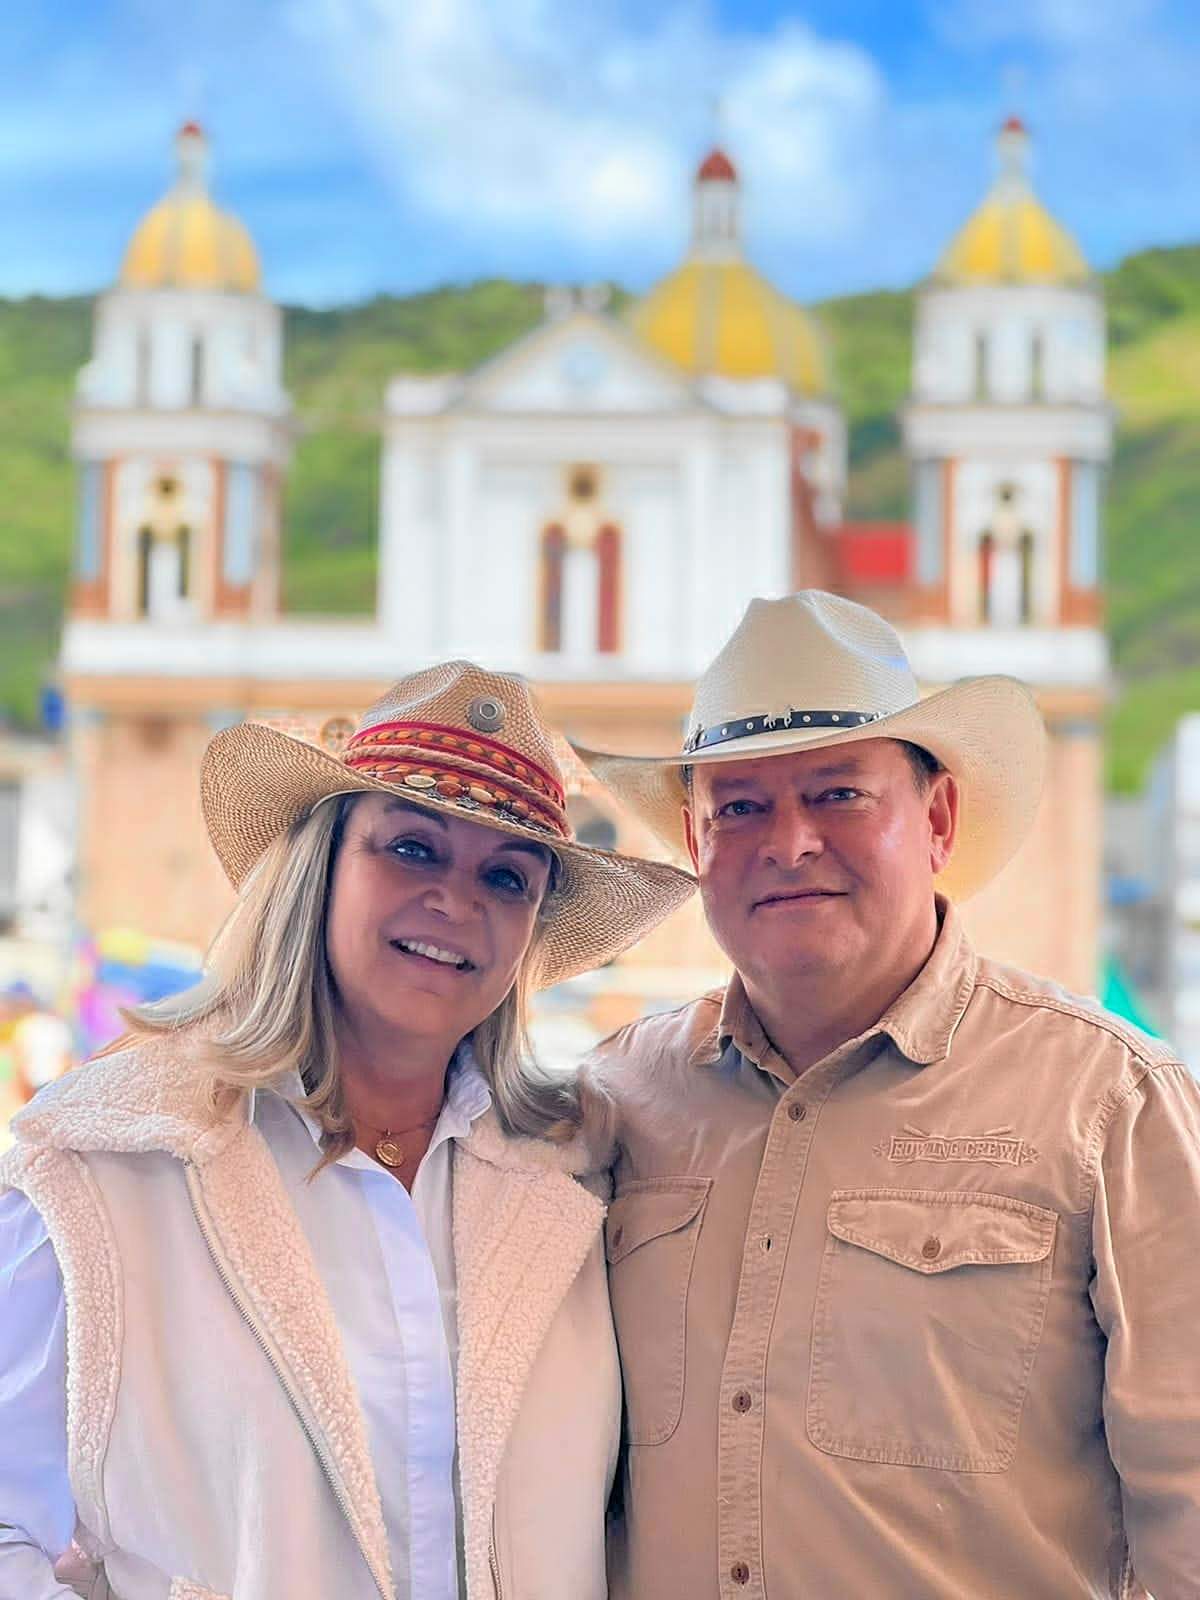 Foto | Lector | LA PATRIA Jhon Gallego y Mona Sierra en estuvieron en Manzanares el puente festivoen la Exposición Equina Grado B.